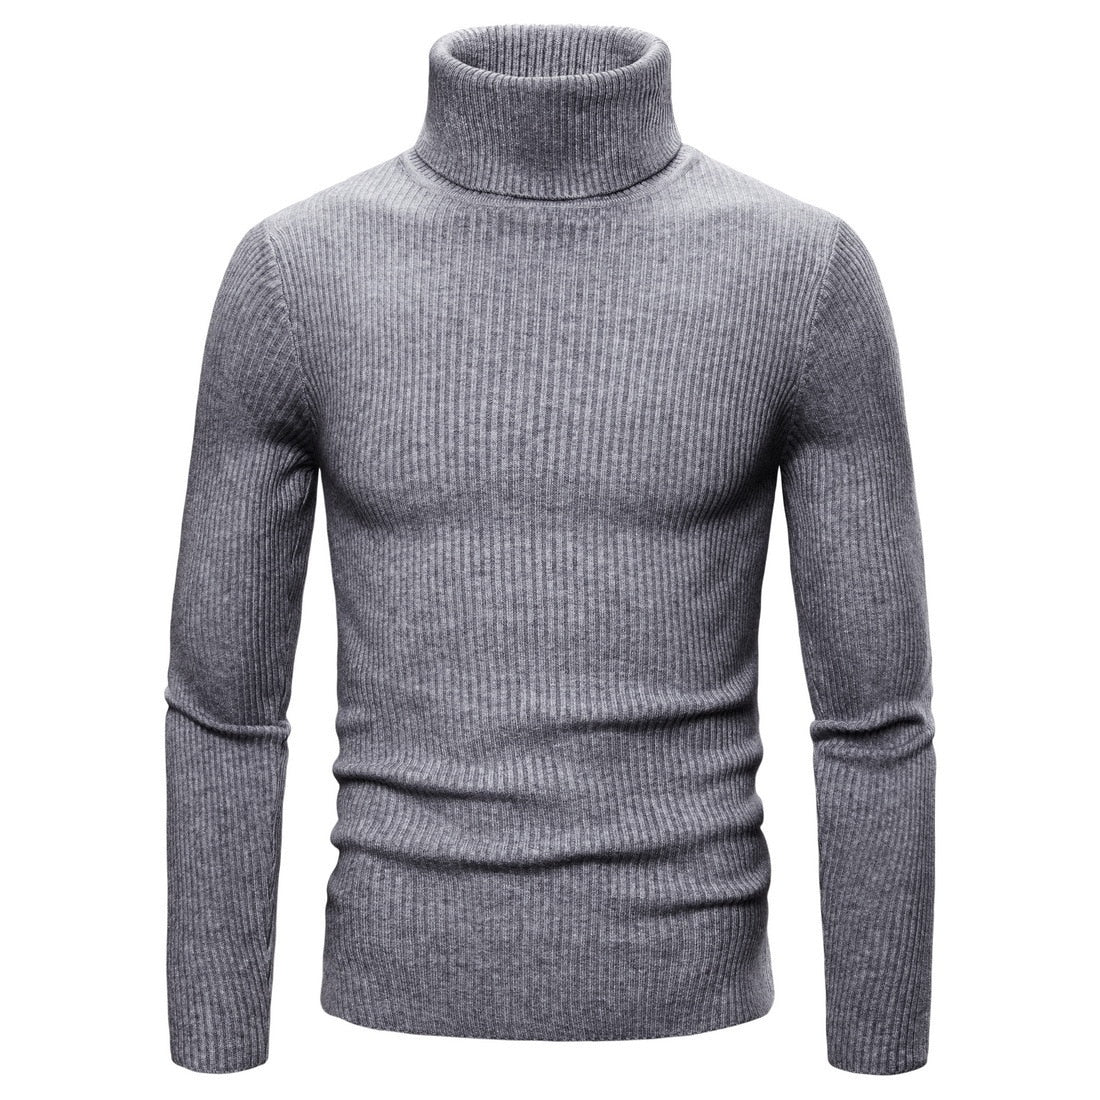 EM AfriNOVA Wekafe Turtleneck Sweater